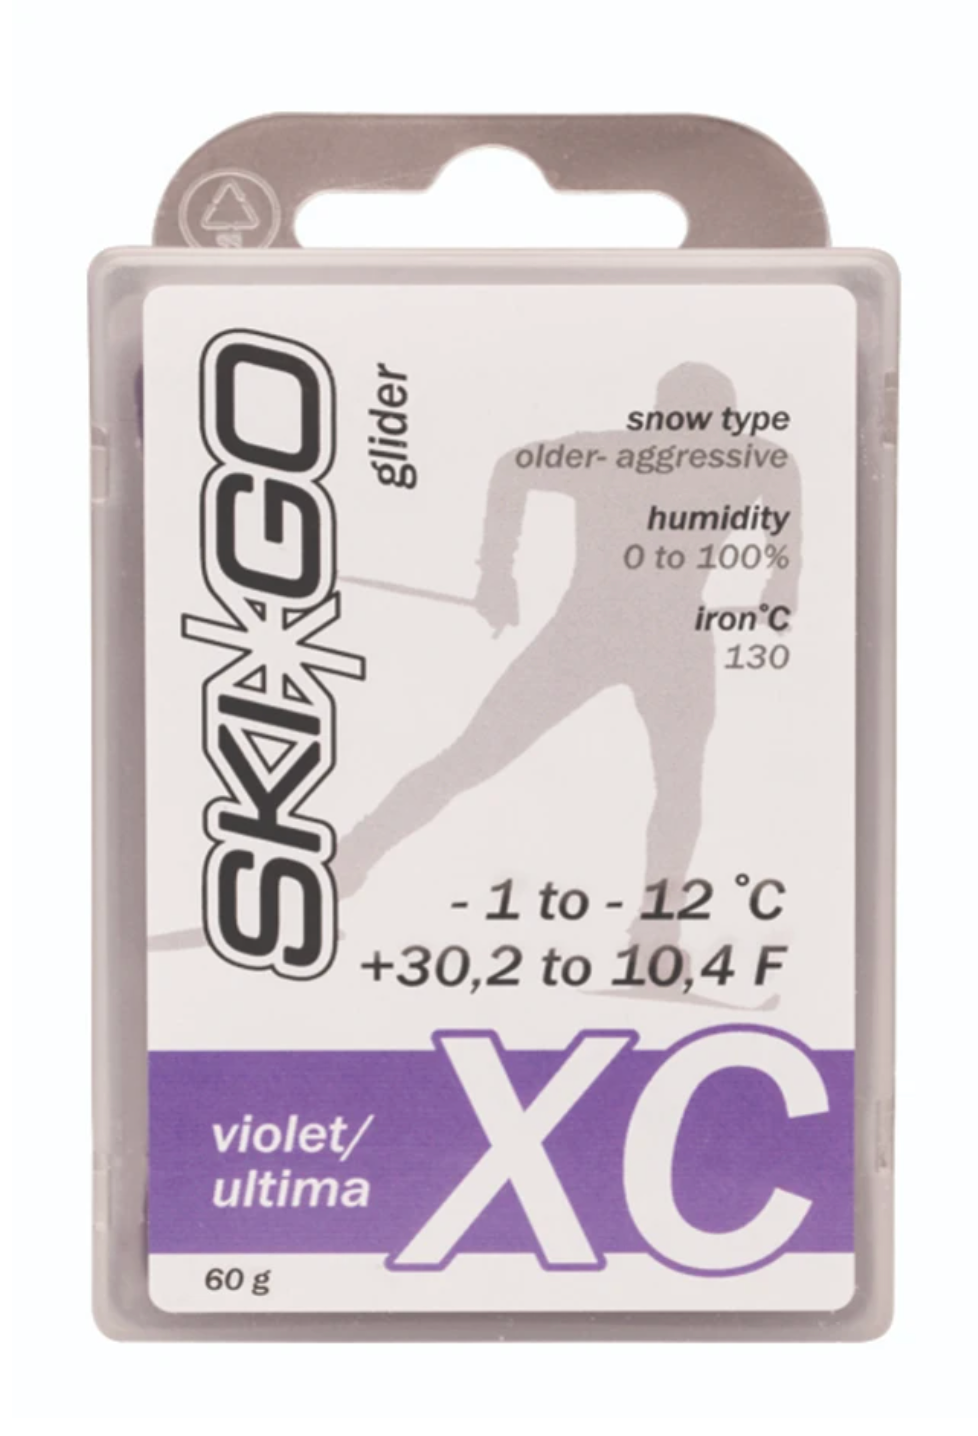 XC Glide Wax 60g - Narciarstwo biegowe